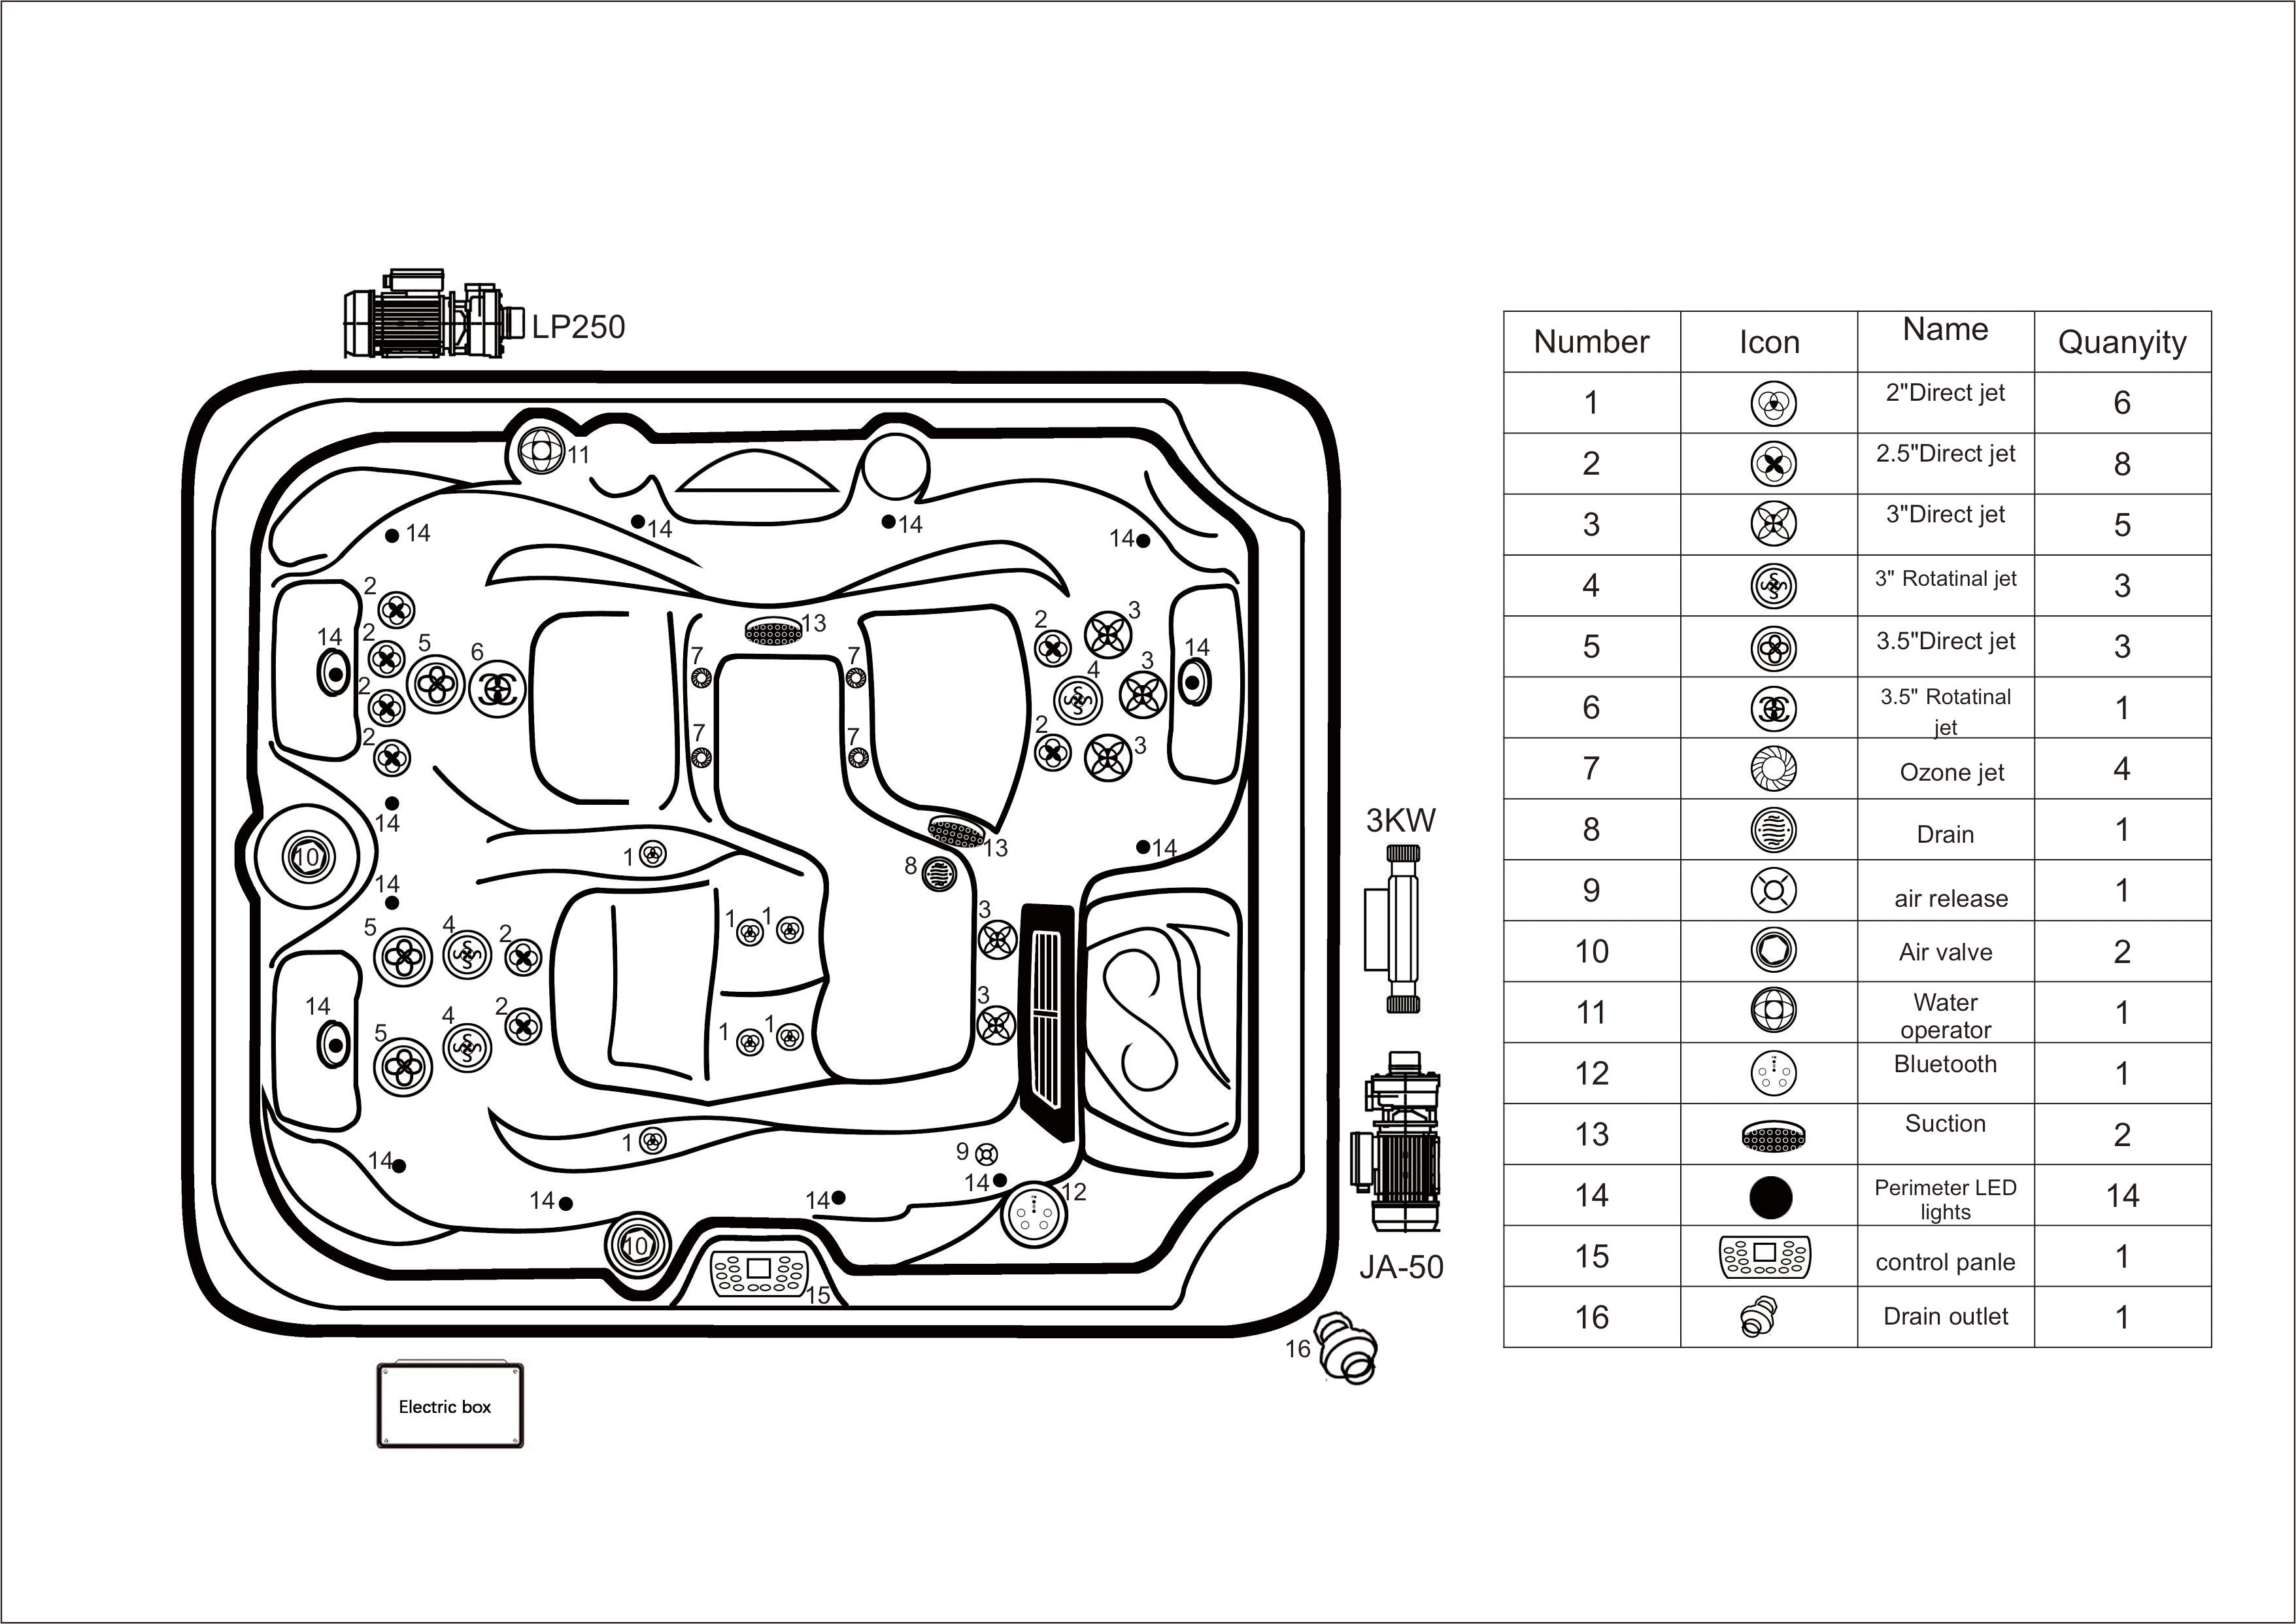 Sanotechnik Outdoor Whirlpool OASIS - Weiß - Abmessungsplan 2 - Skizze & Anordnung der Austattung